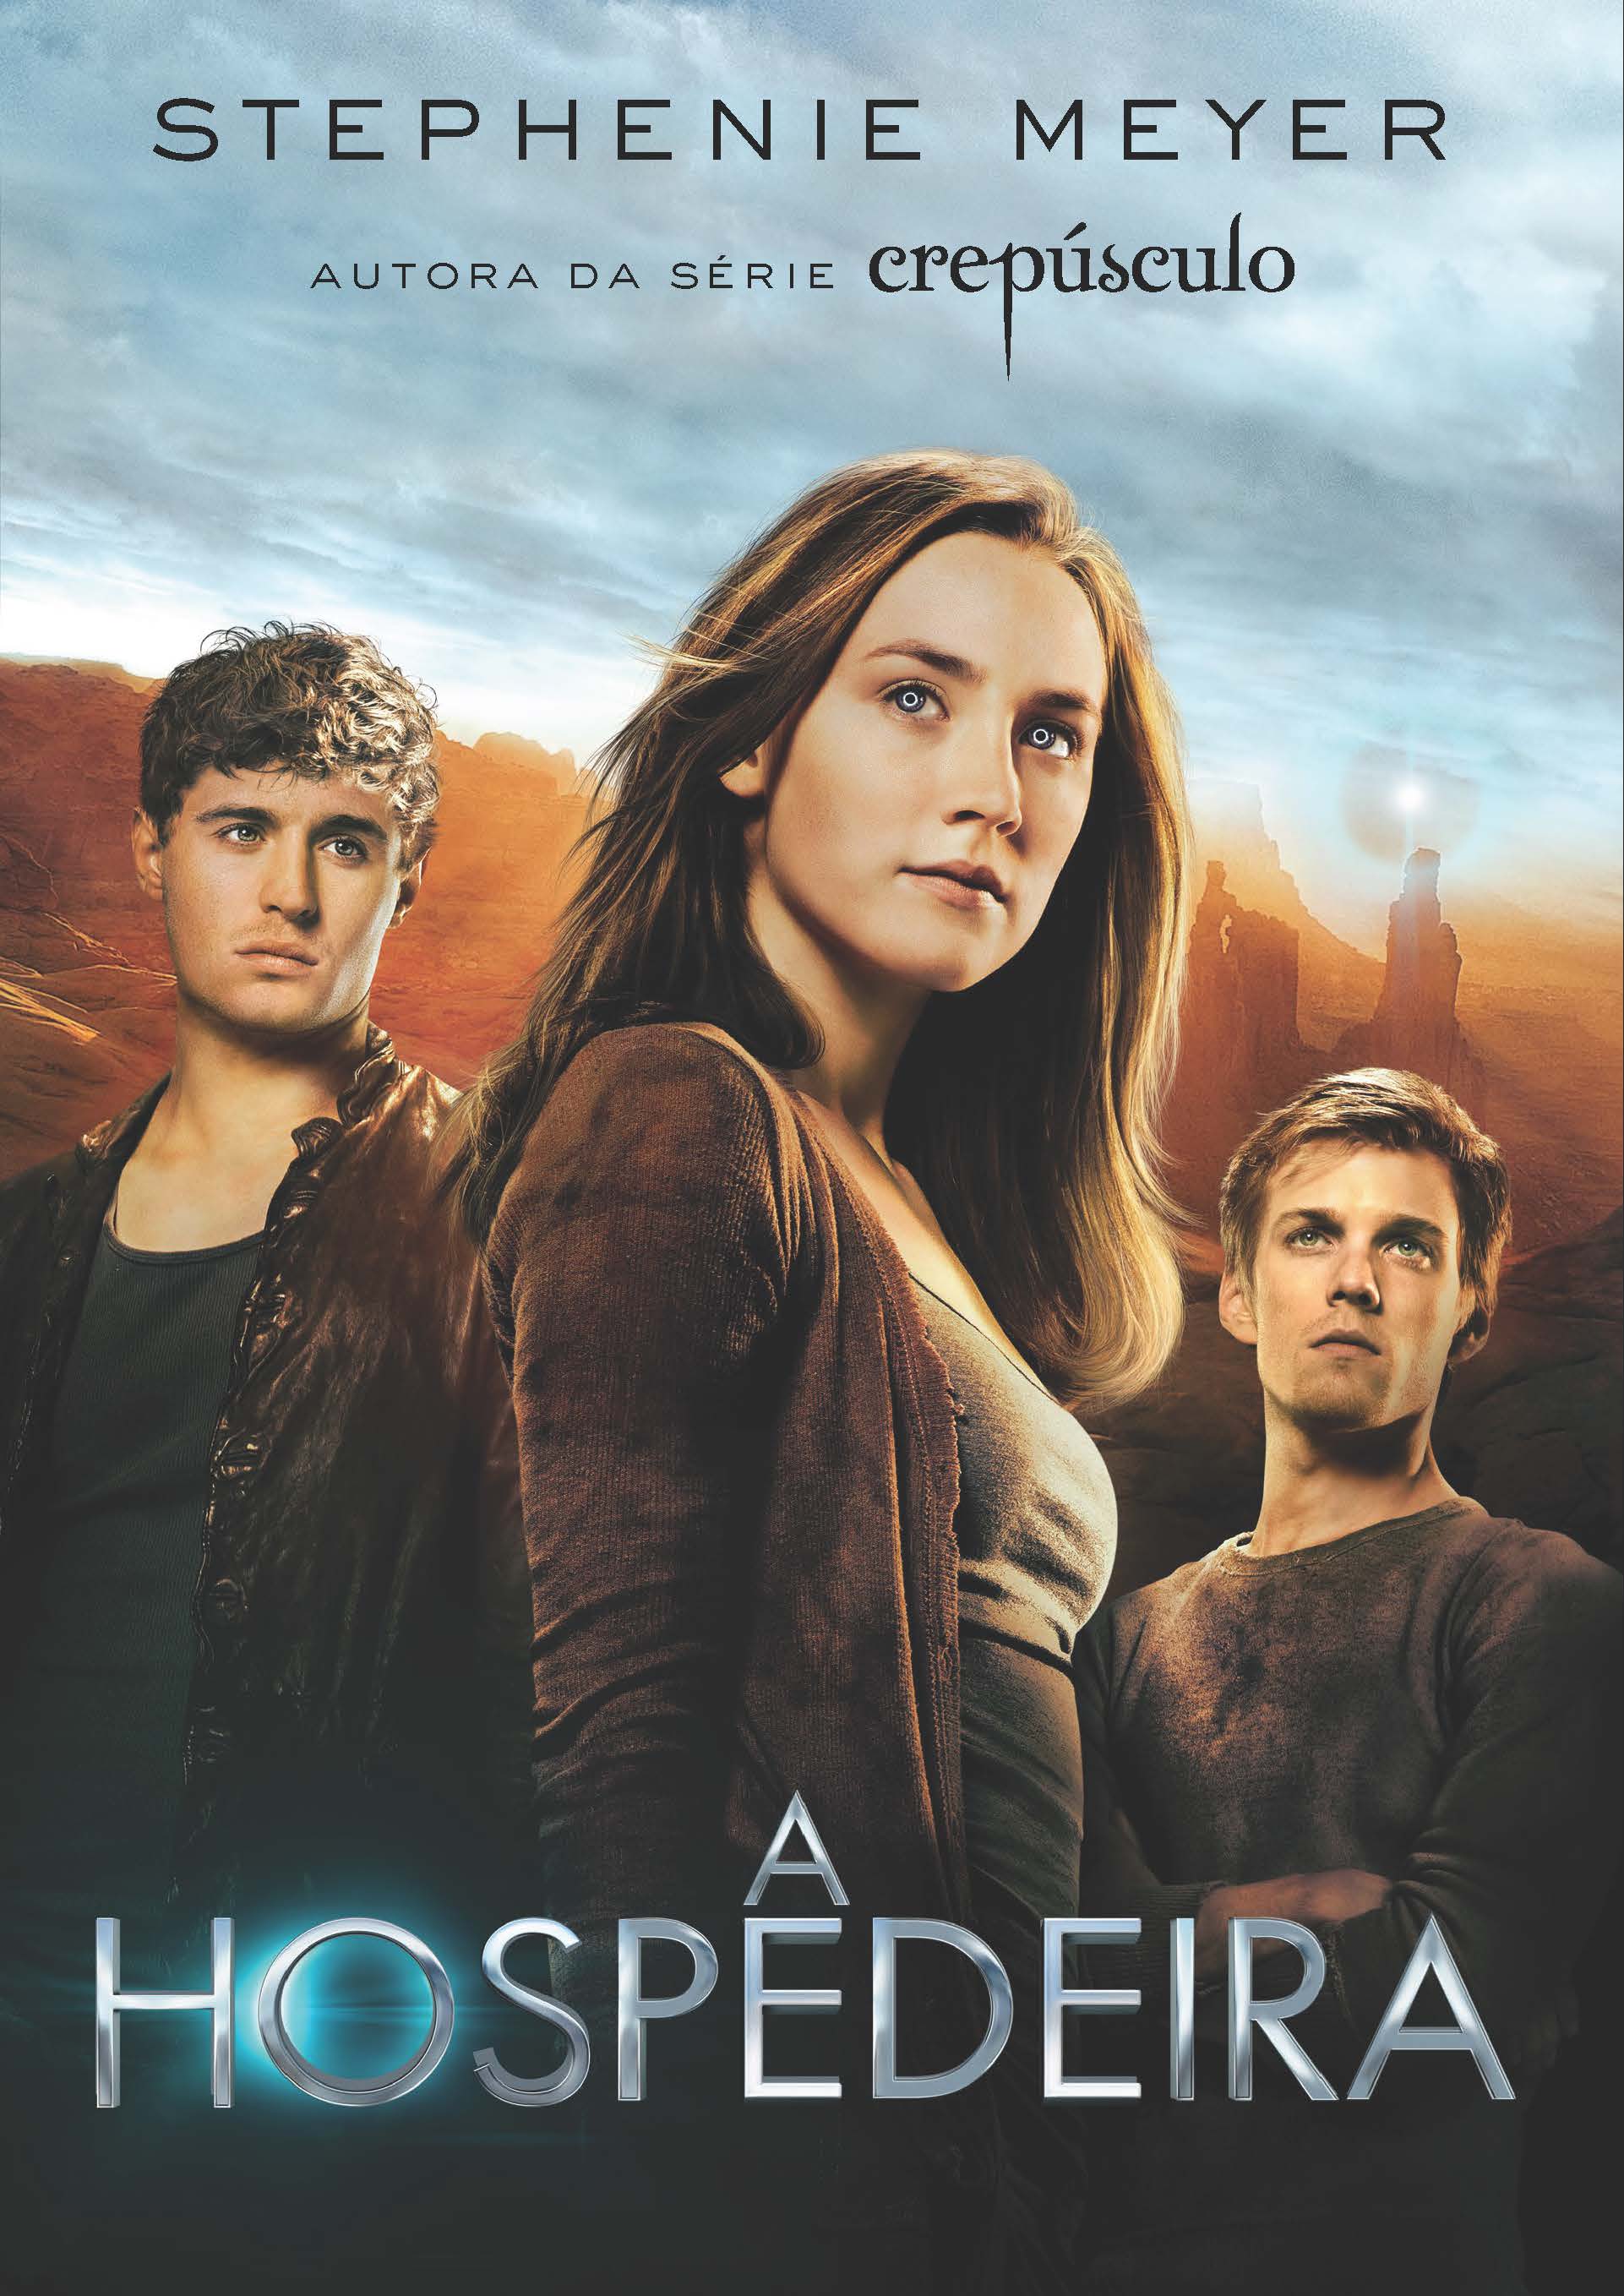 Edição especial de A hospedeira com capa inspirada no cartaz do filme